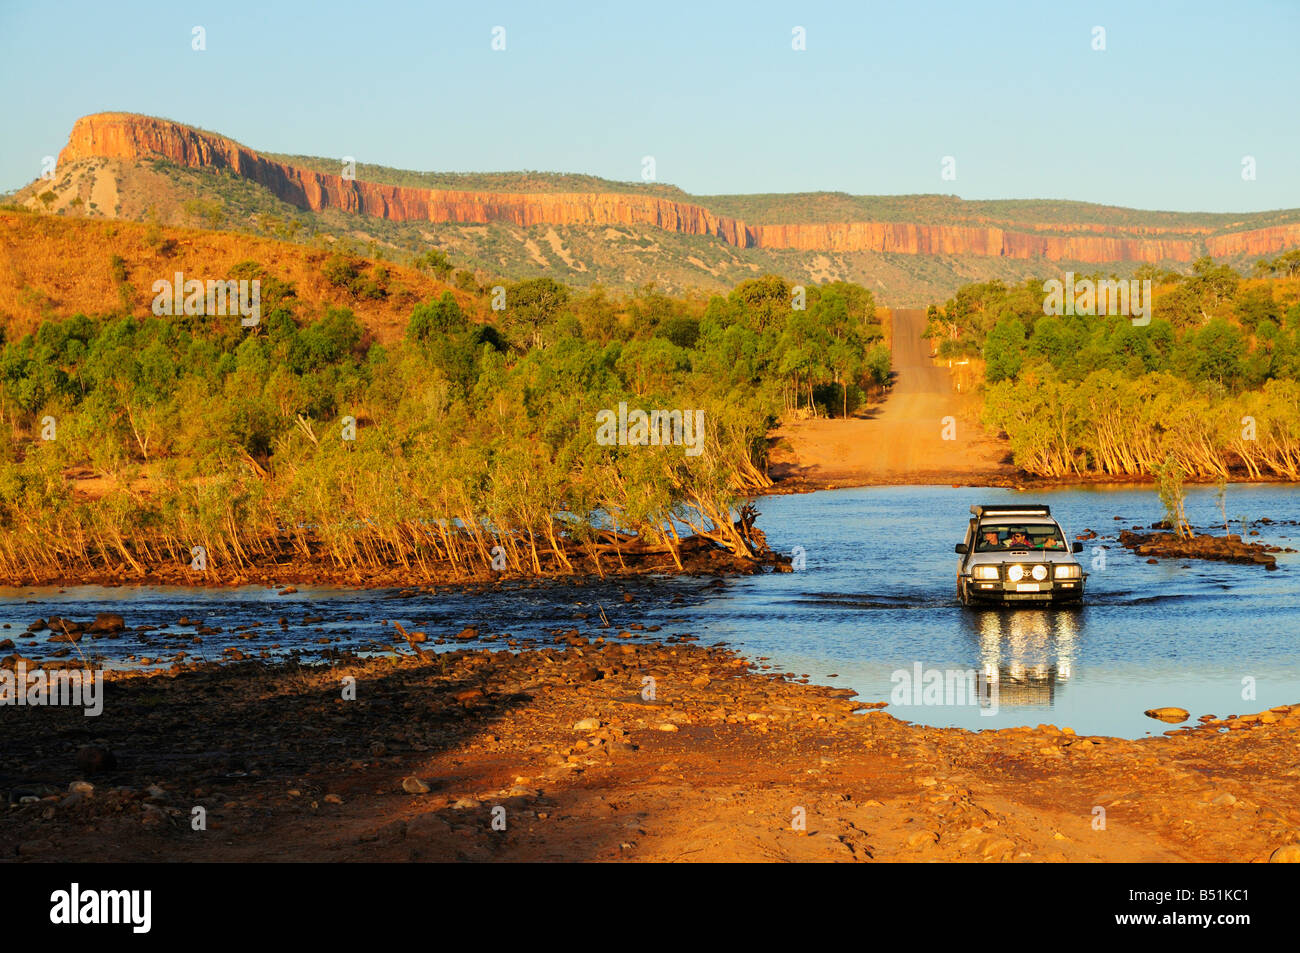 Traversée de la rivière Pentecôte SUV avec Cockburn s'étend en arrière-plan, Gibb River Road, Kimberley, Western Australia, Australia Banque D'Images